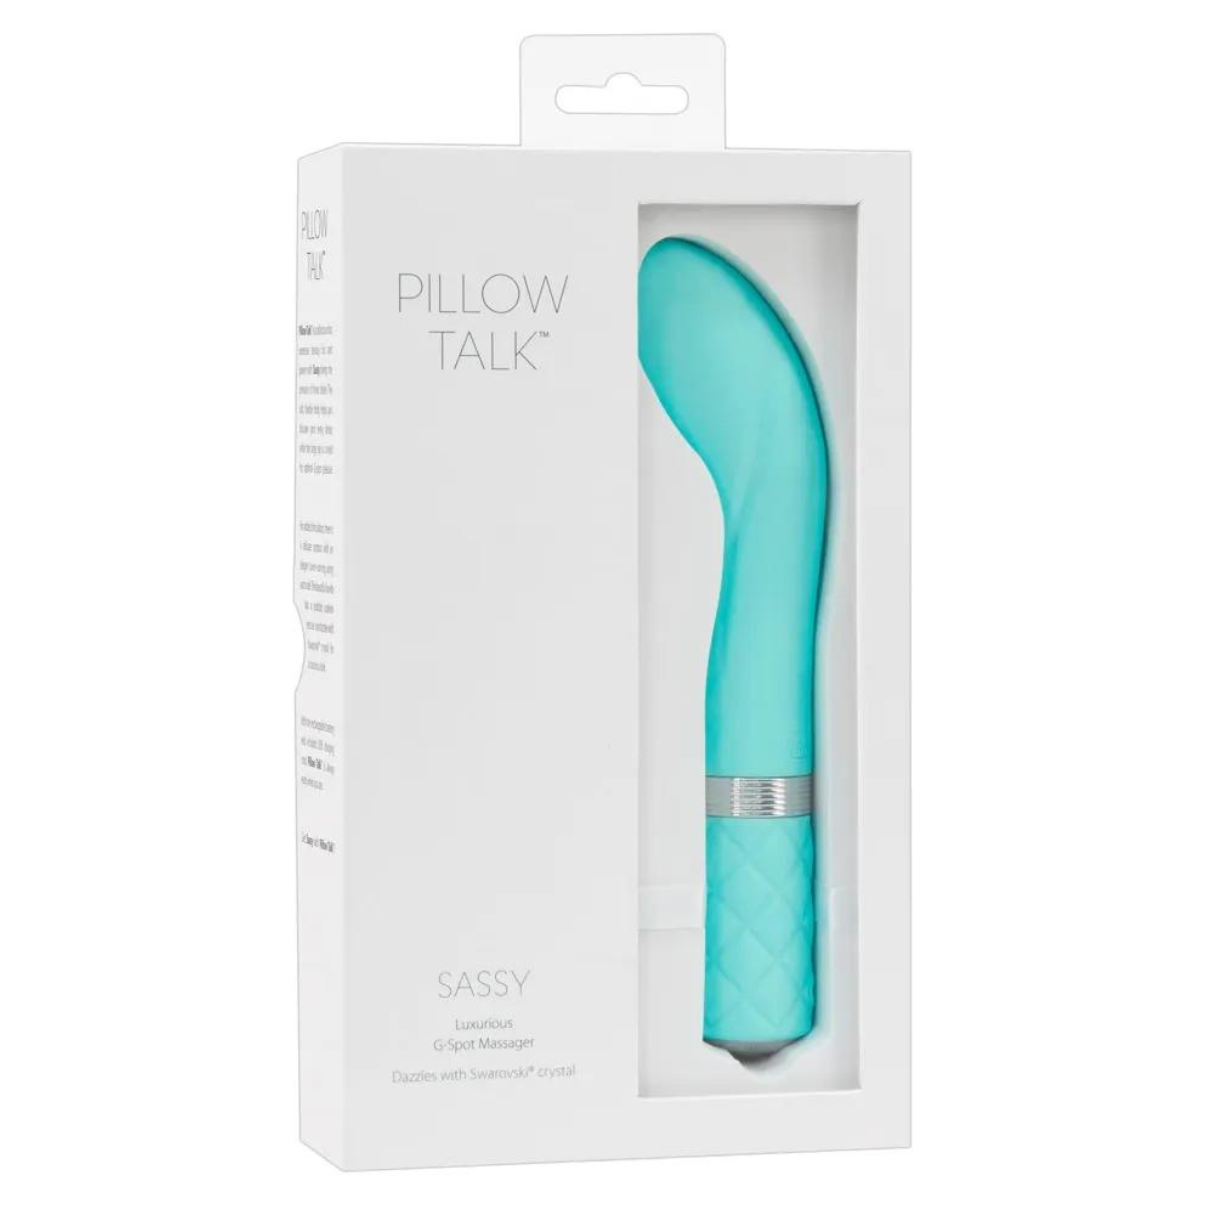 PILLOW Sassy g-punkt-vibratoren Vibrator Teal G-Punkt Pillow Talk TALK - -